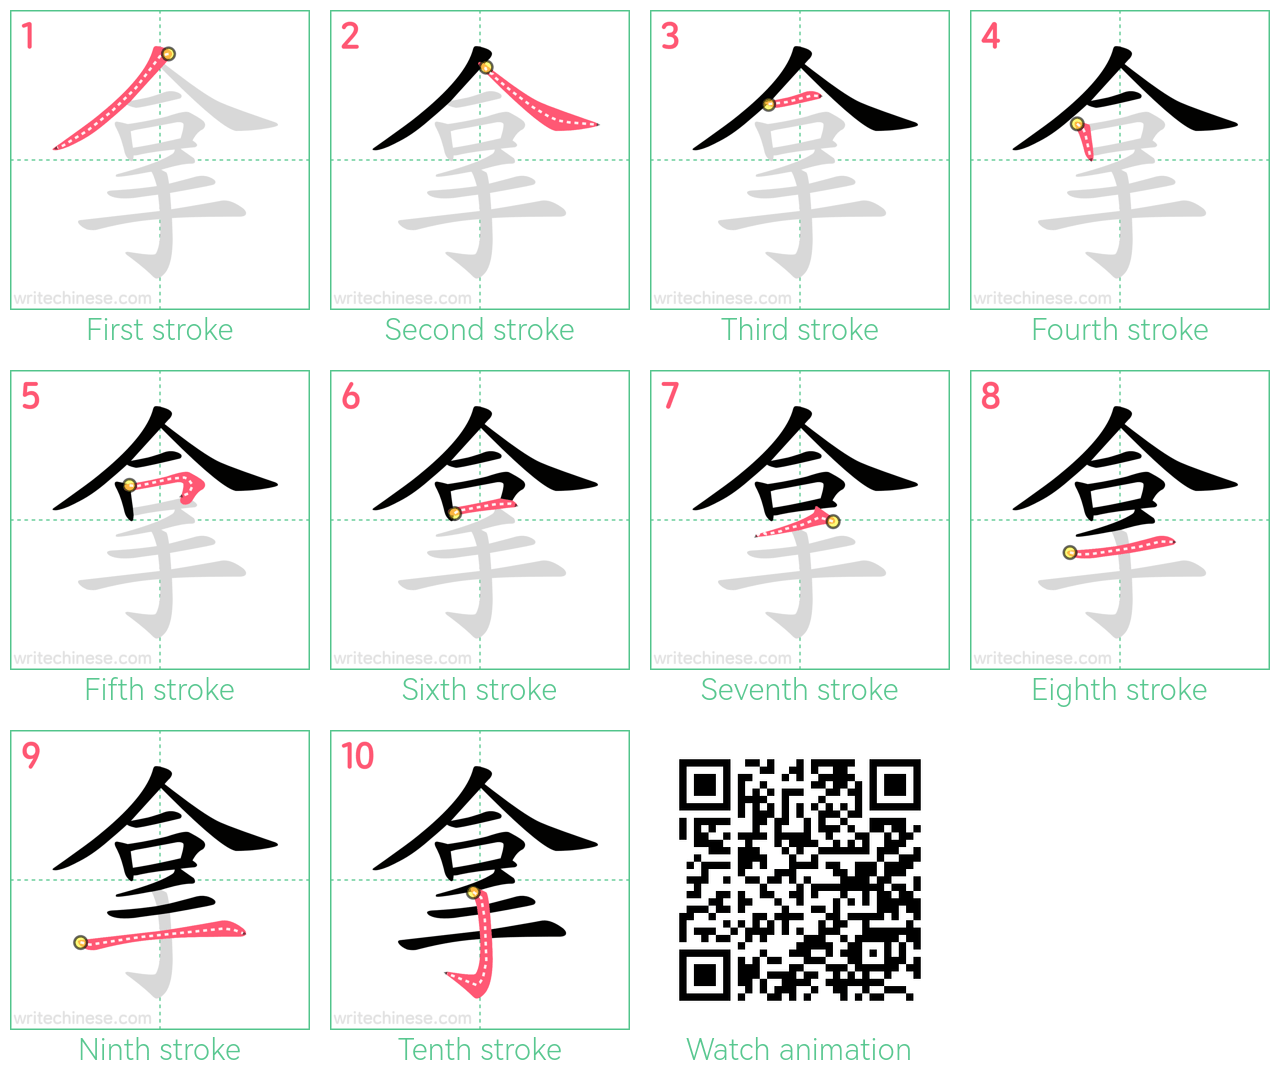 拿 step-by-step stroke order diagrams